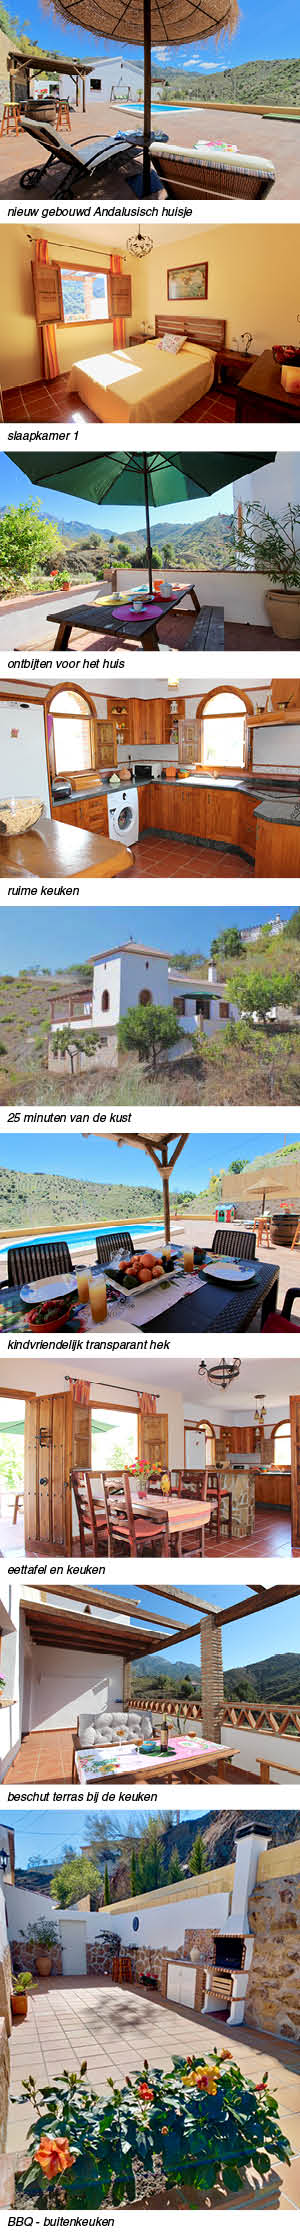 Vakantiehuis Casa Clara in Andalusie indeling en omgeving rechts